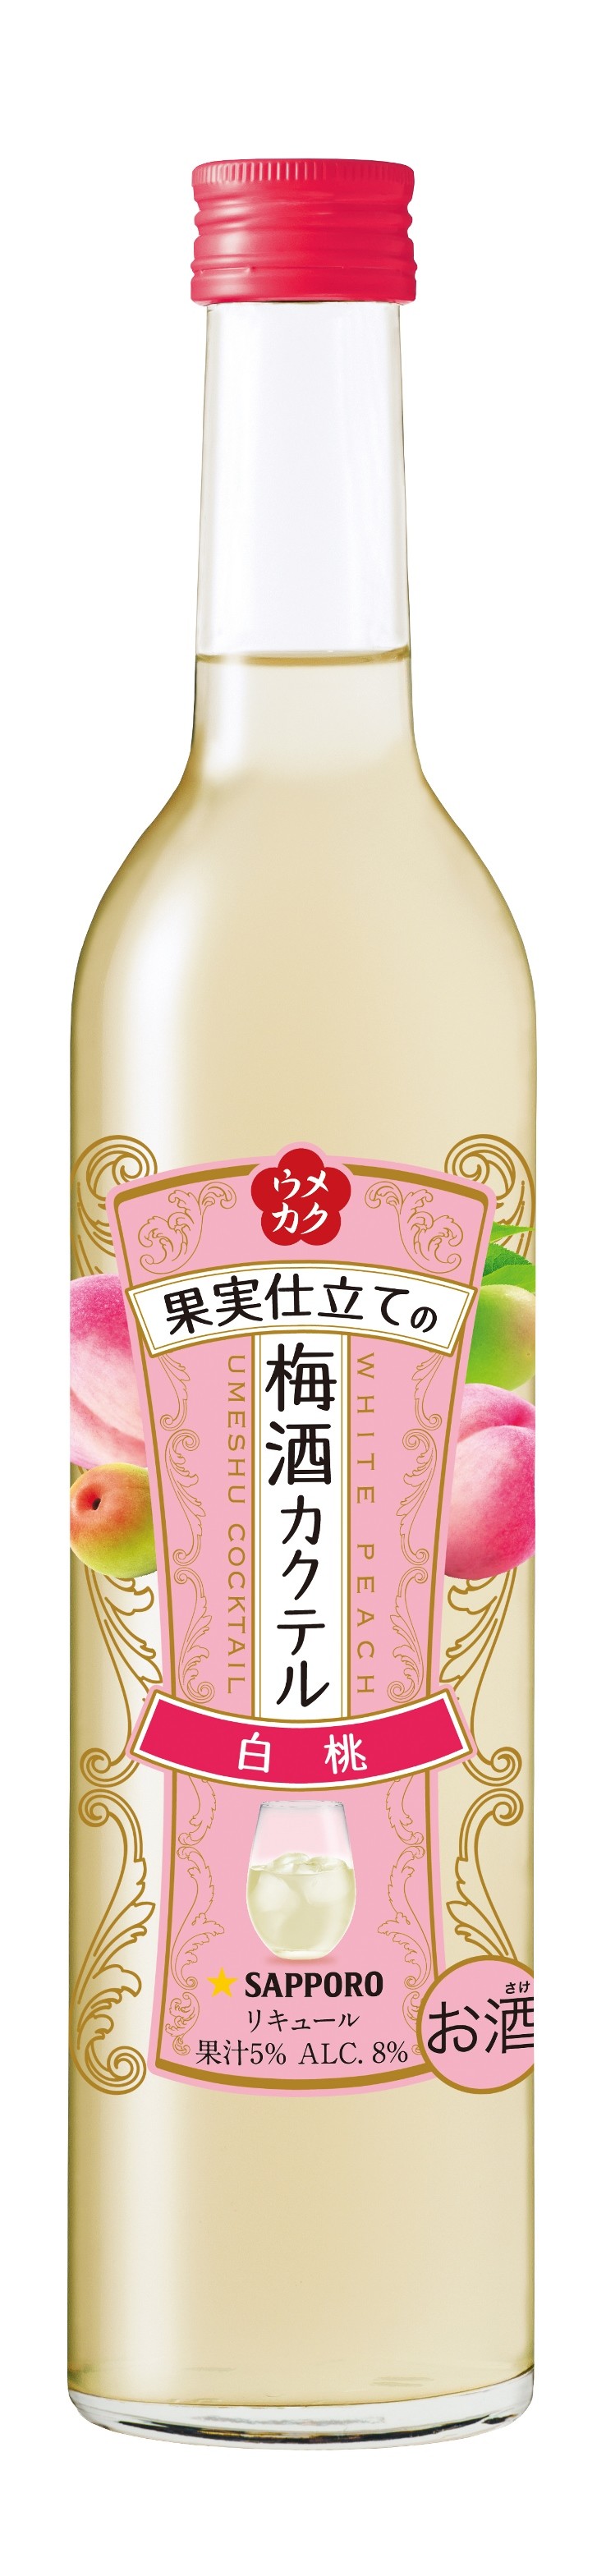 白桃の果汁使用で、香りとフルーティな味わいが楽しめる